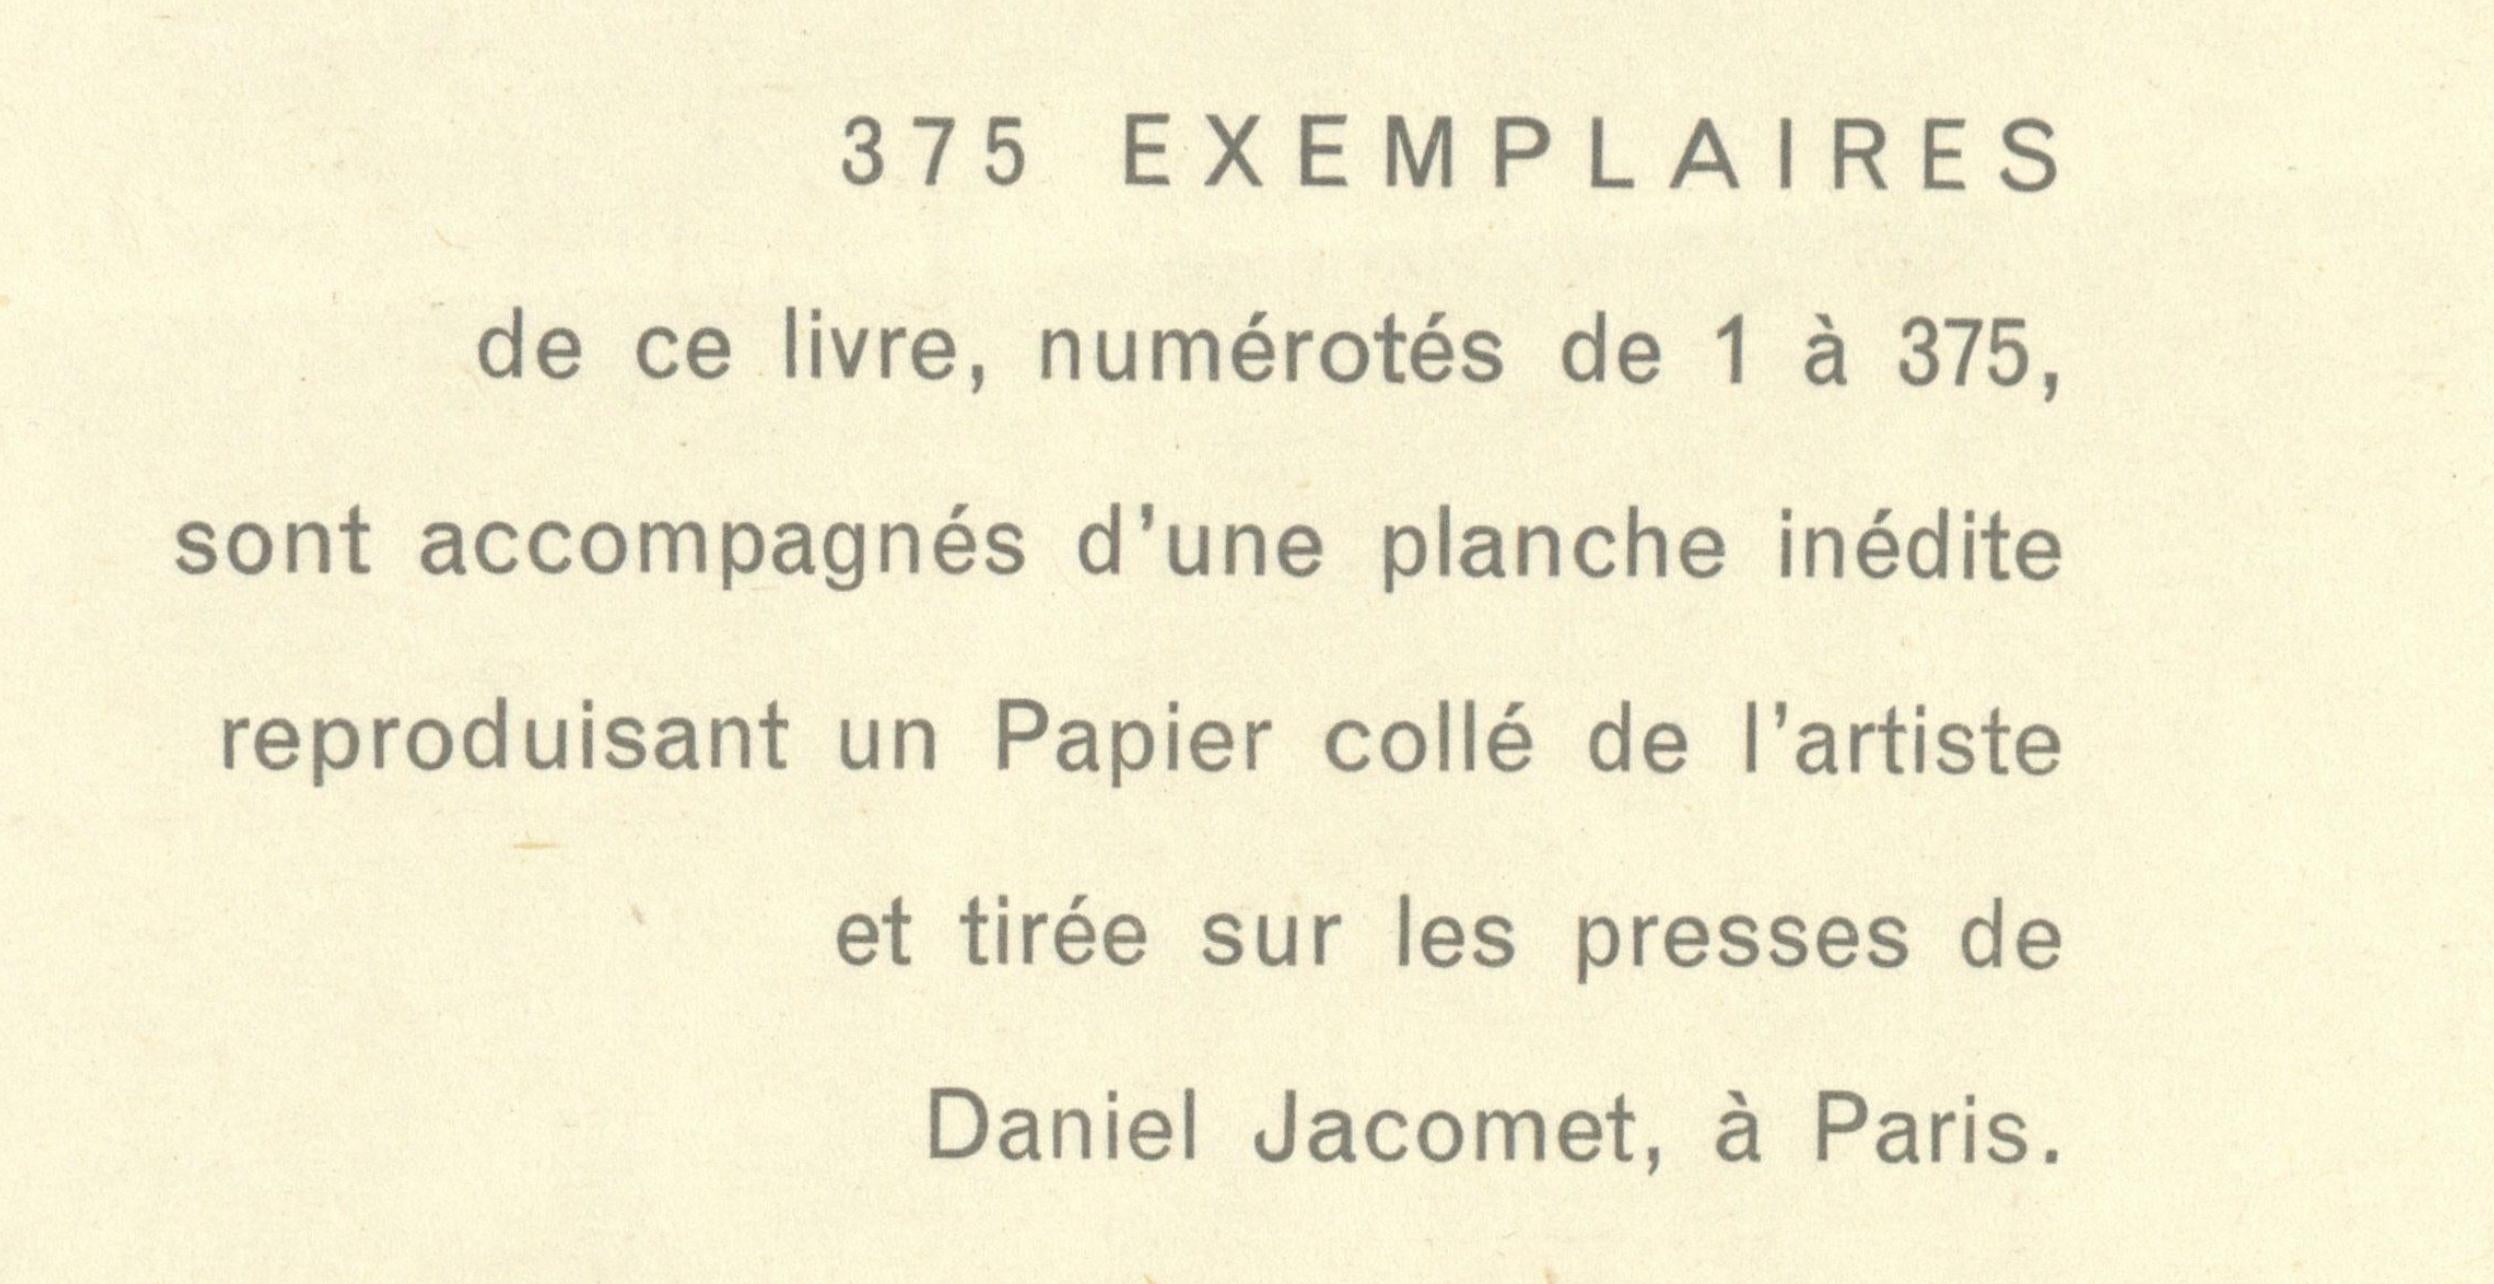 de Staël, Composition, Nicolas de Staël: Peintres d'aujourd'hui (after) 3